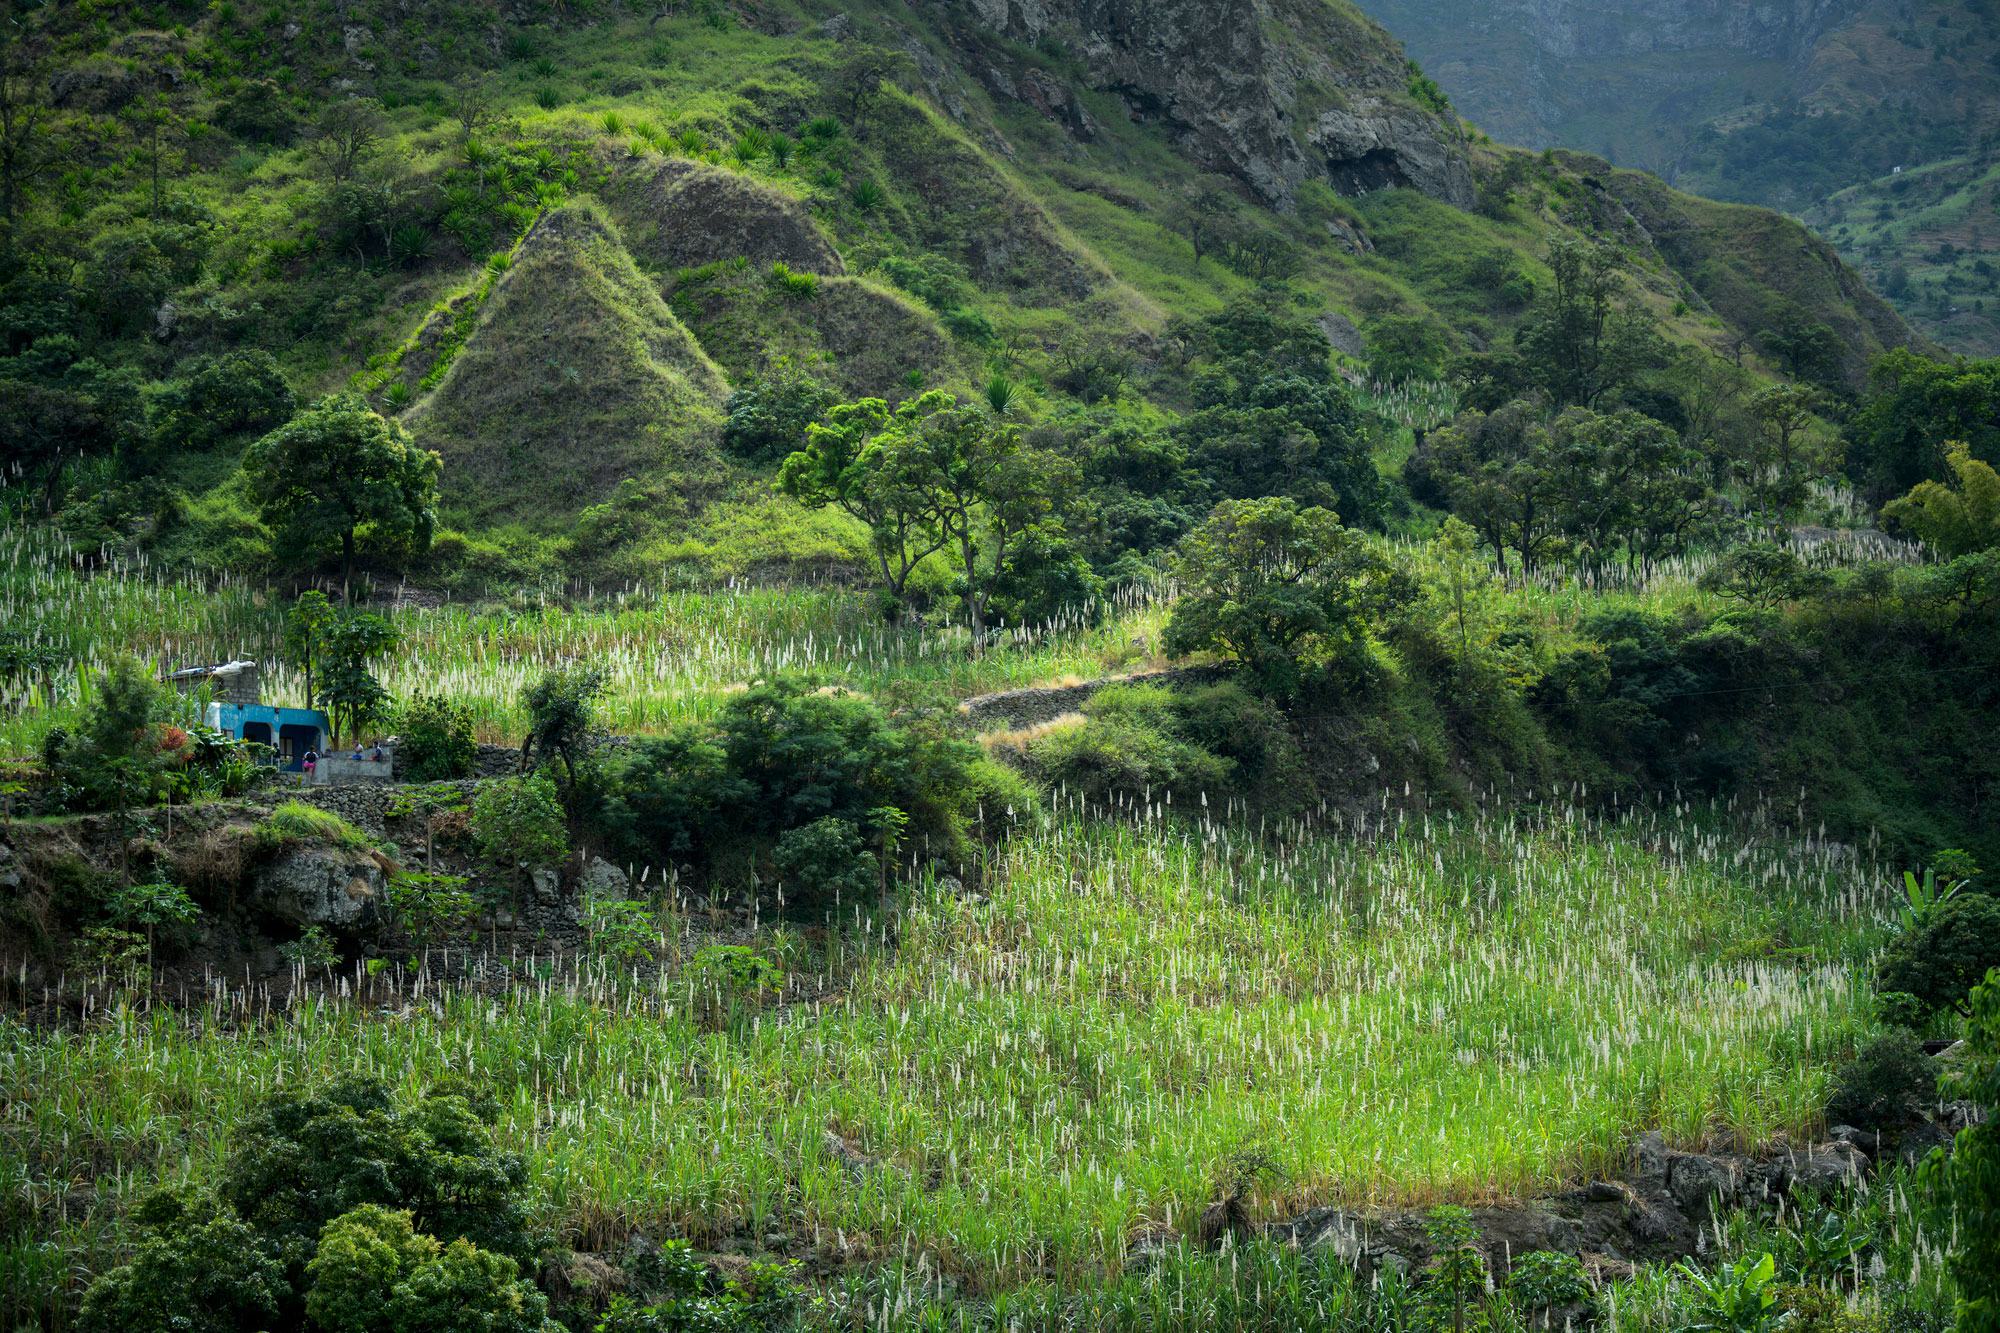 سانتو أنتاو ، واحدة من أكثر جزر الرأس الأخضر خضرة وجبلية ، وتستضيف العديد من المشاريع الأممية للمرونة في مواجهة تغير المناخ وللتنمية المستدامة 